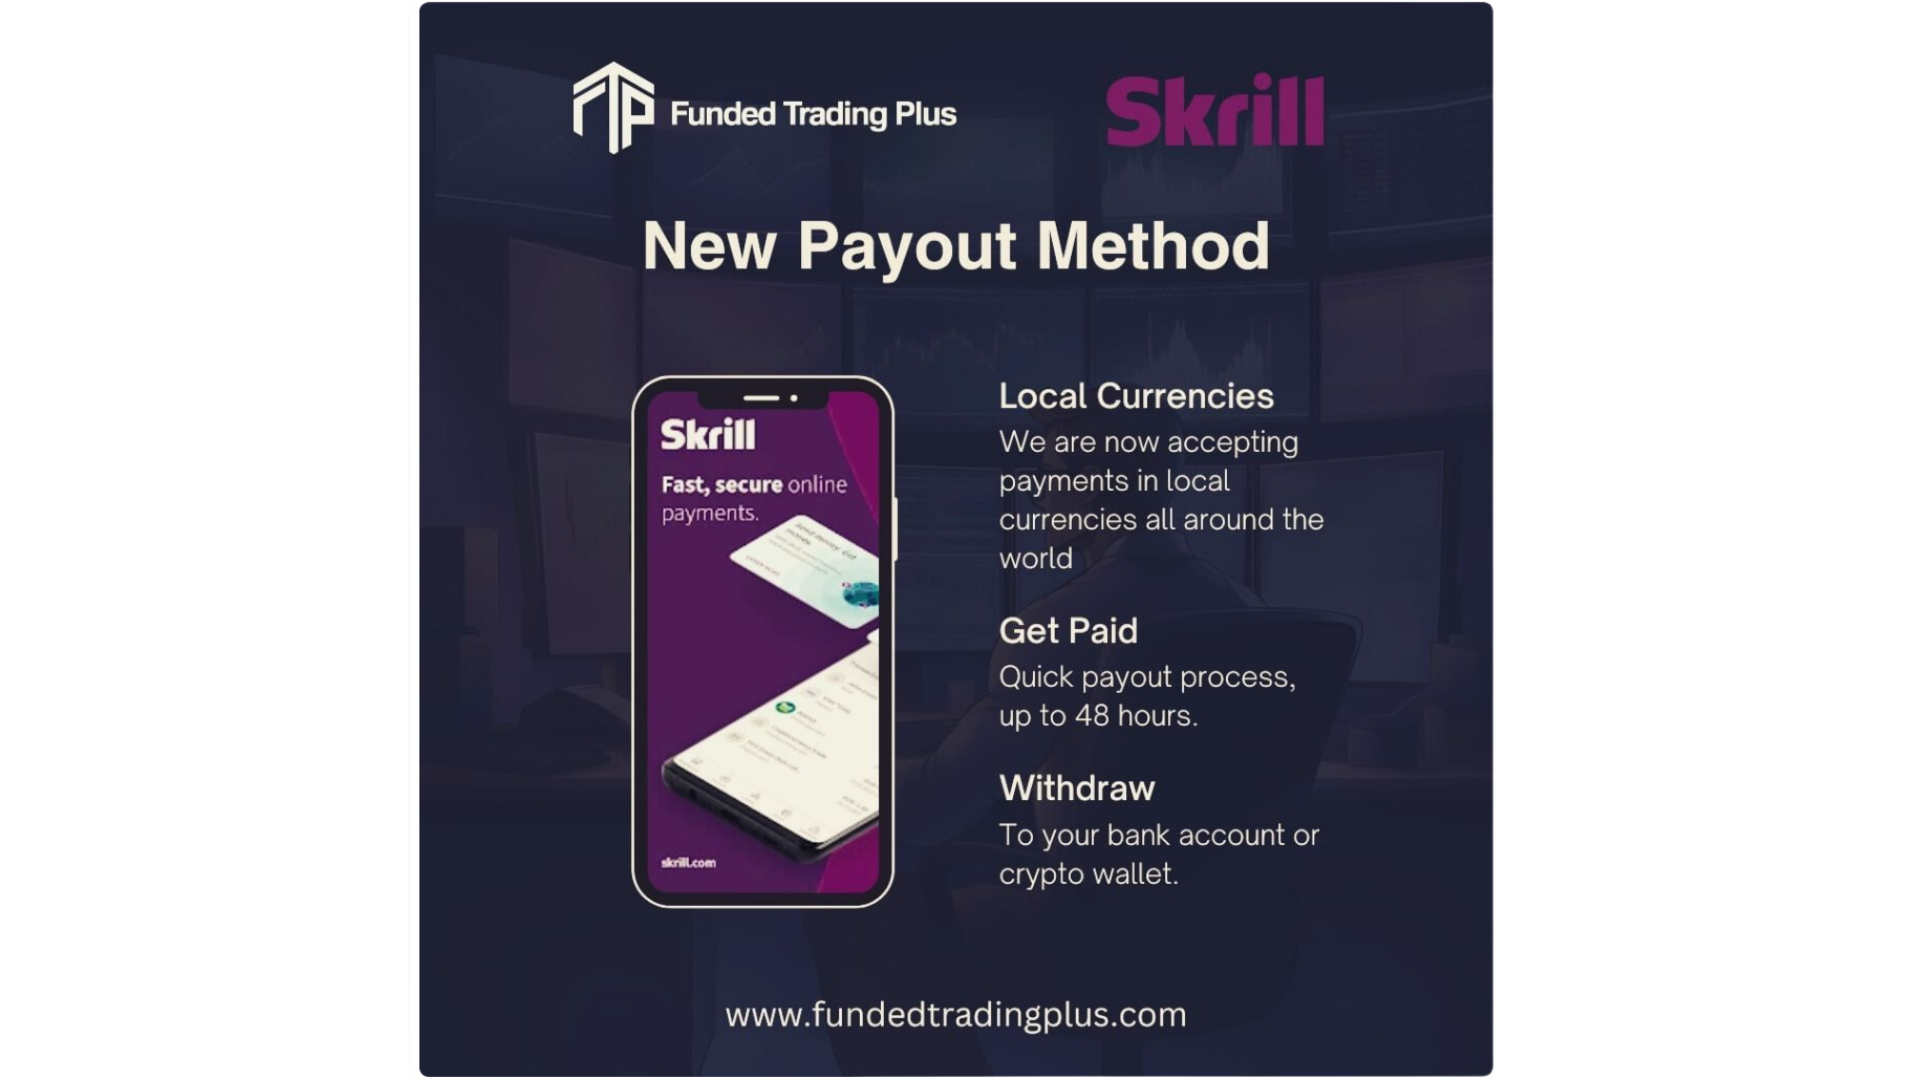 [New] Funded Trading Plus kết hợp với Skrill và Đừng quên ưu đãi tháng 2